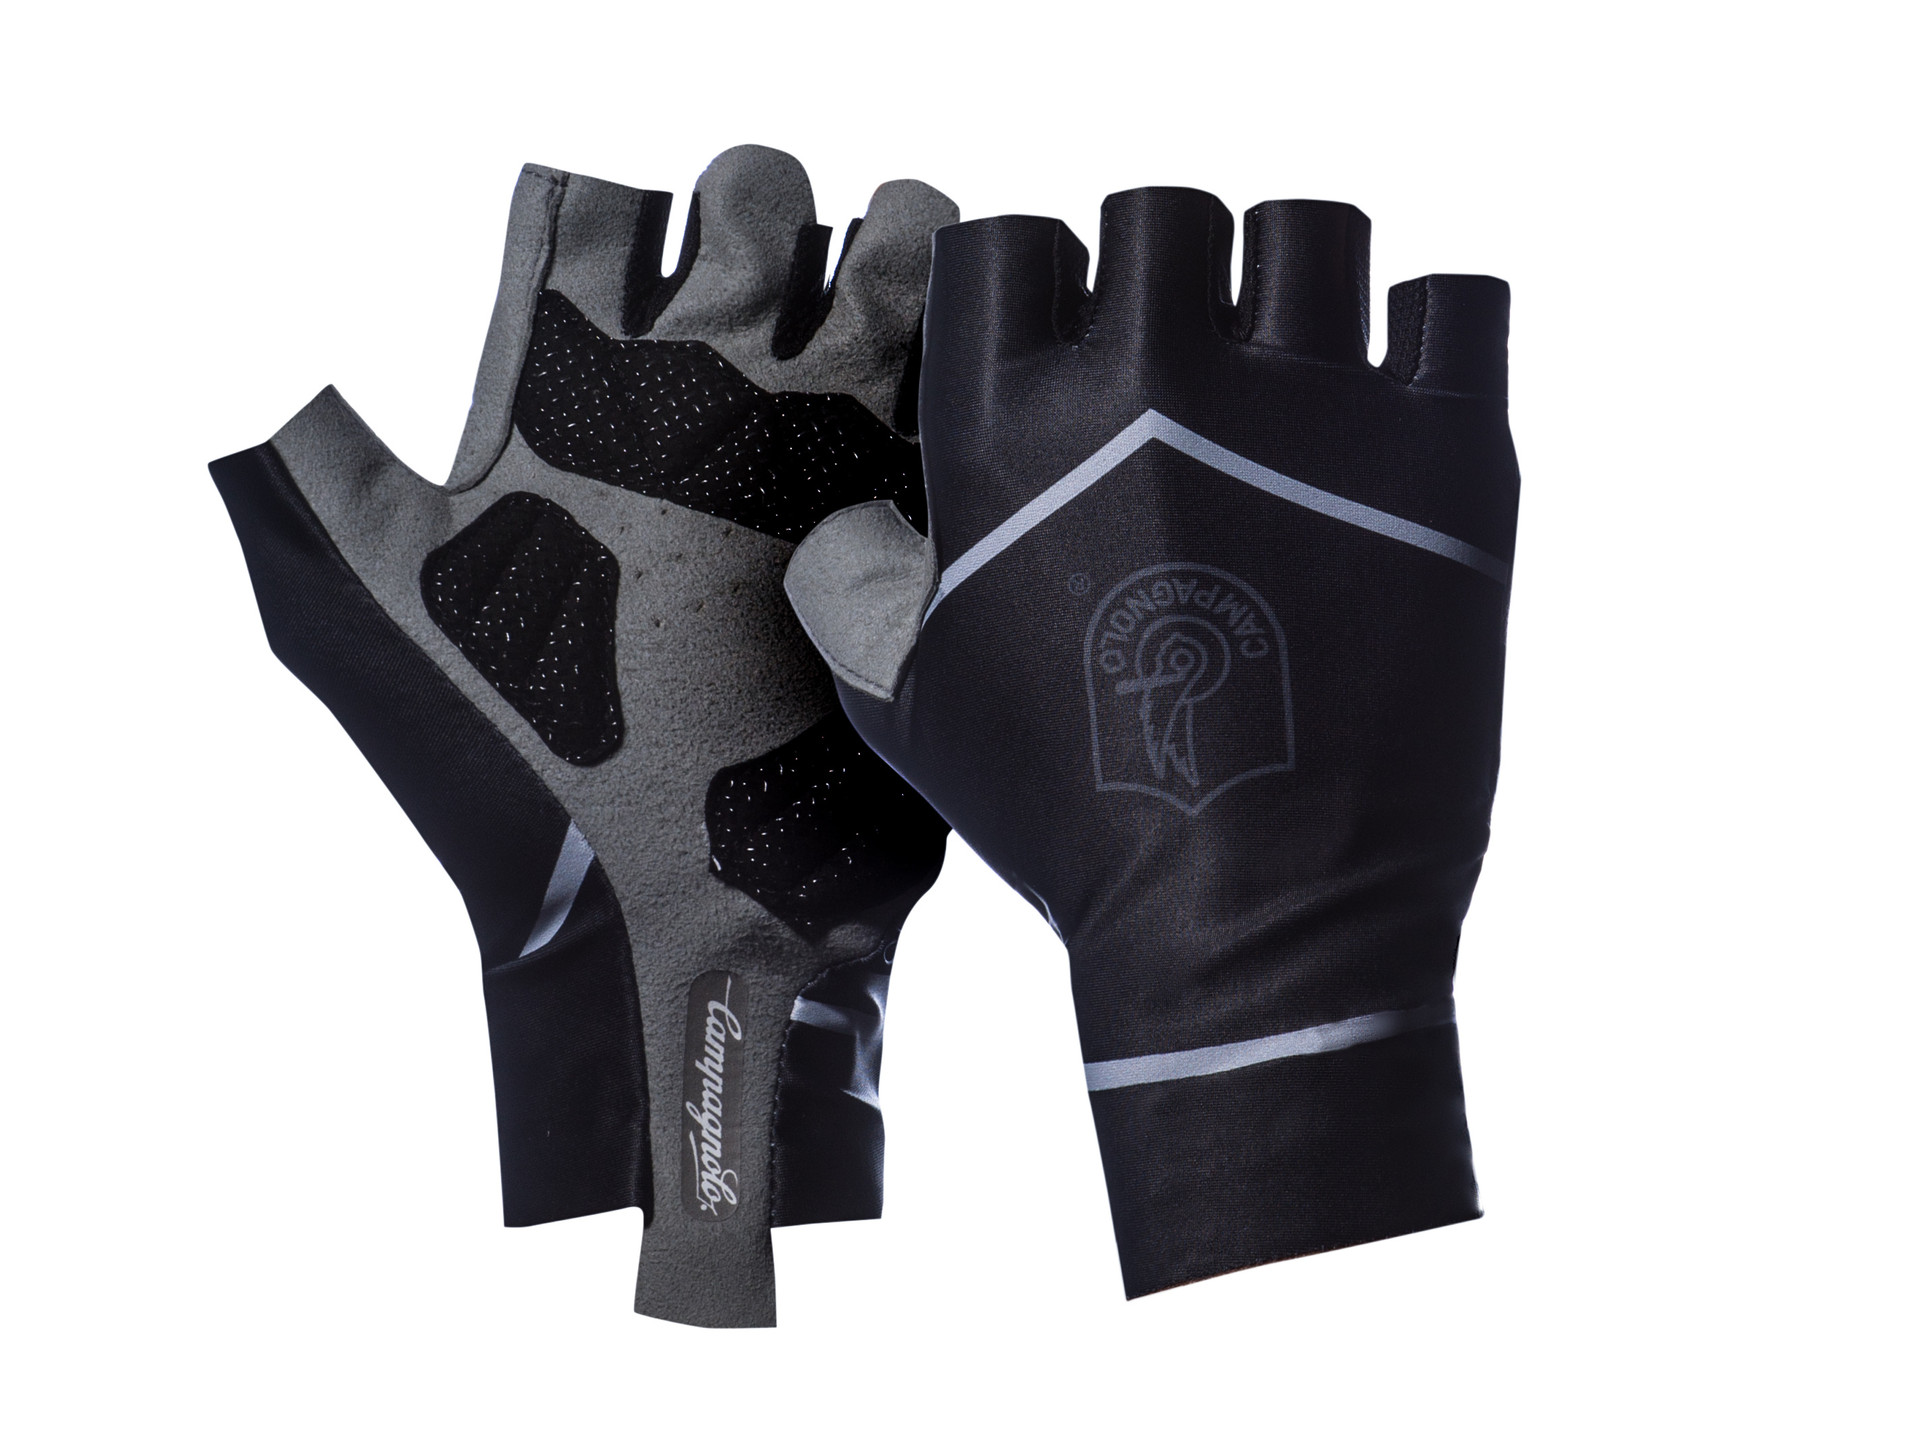 High-Tech Cycling Gloves